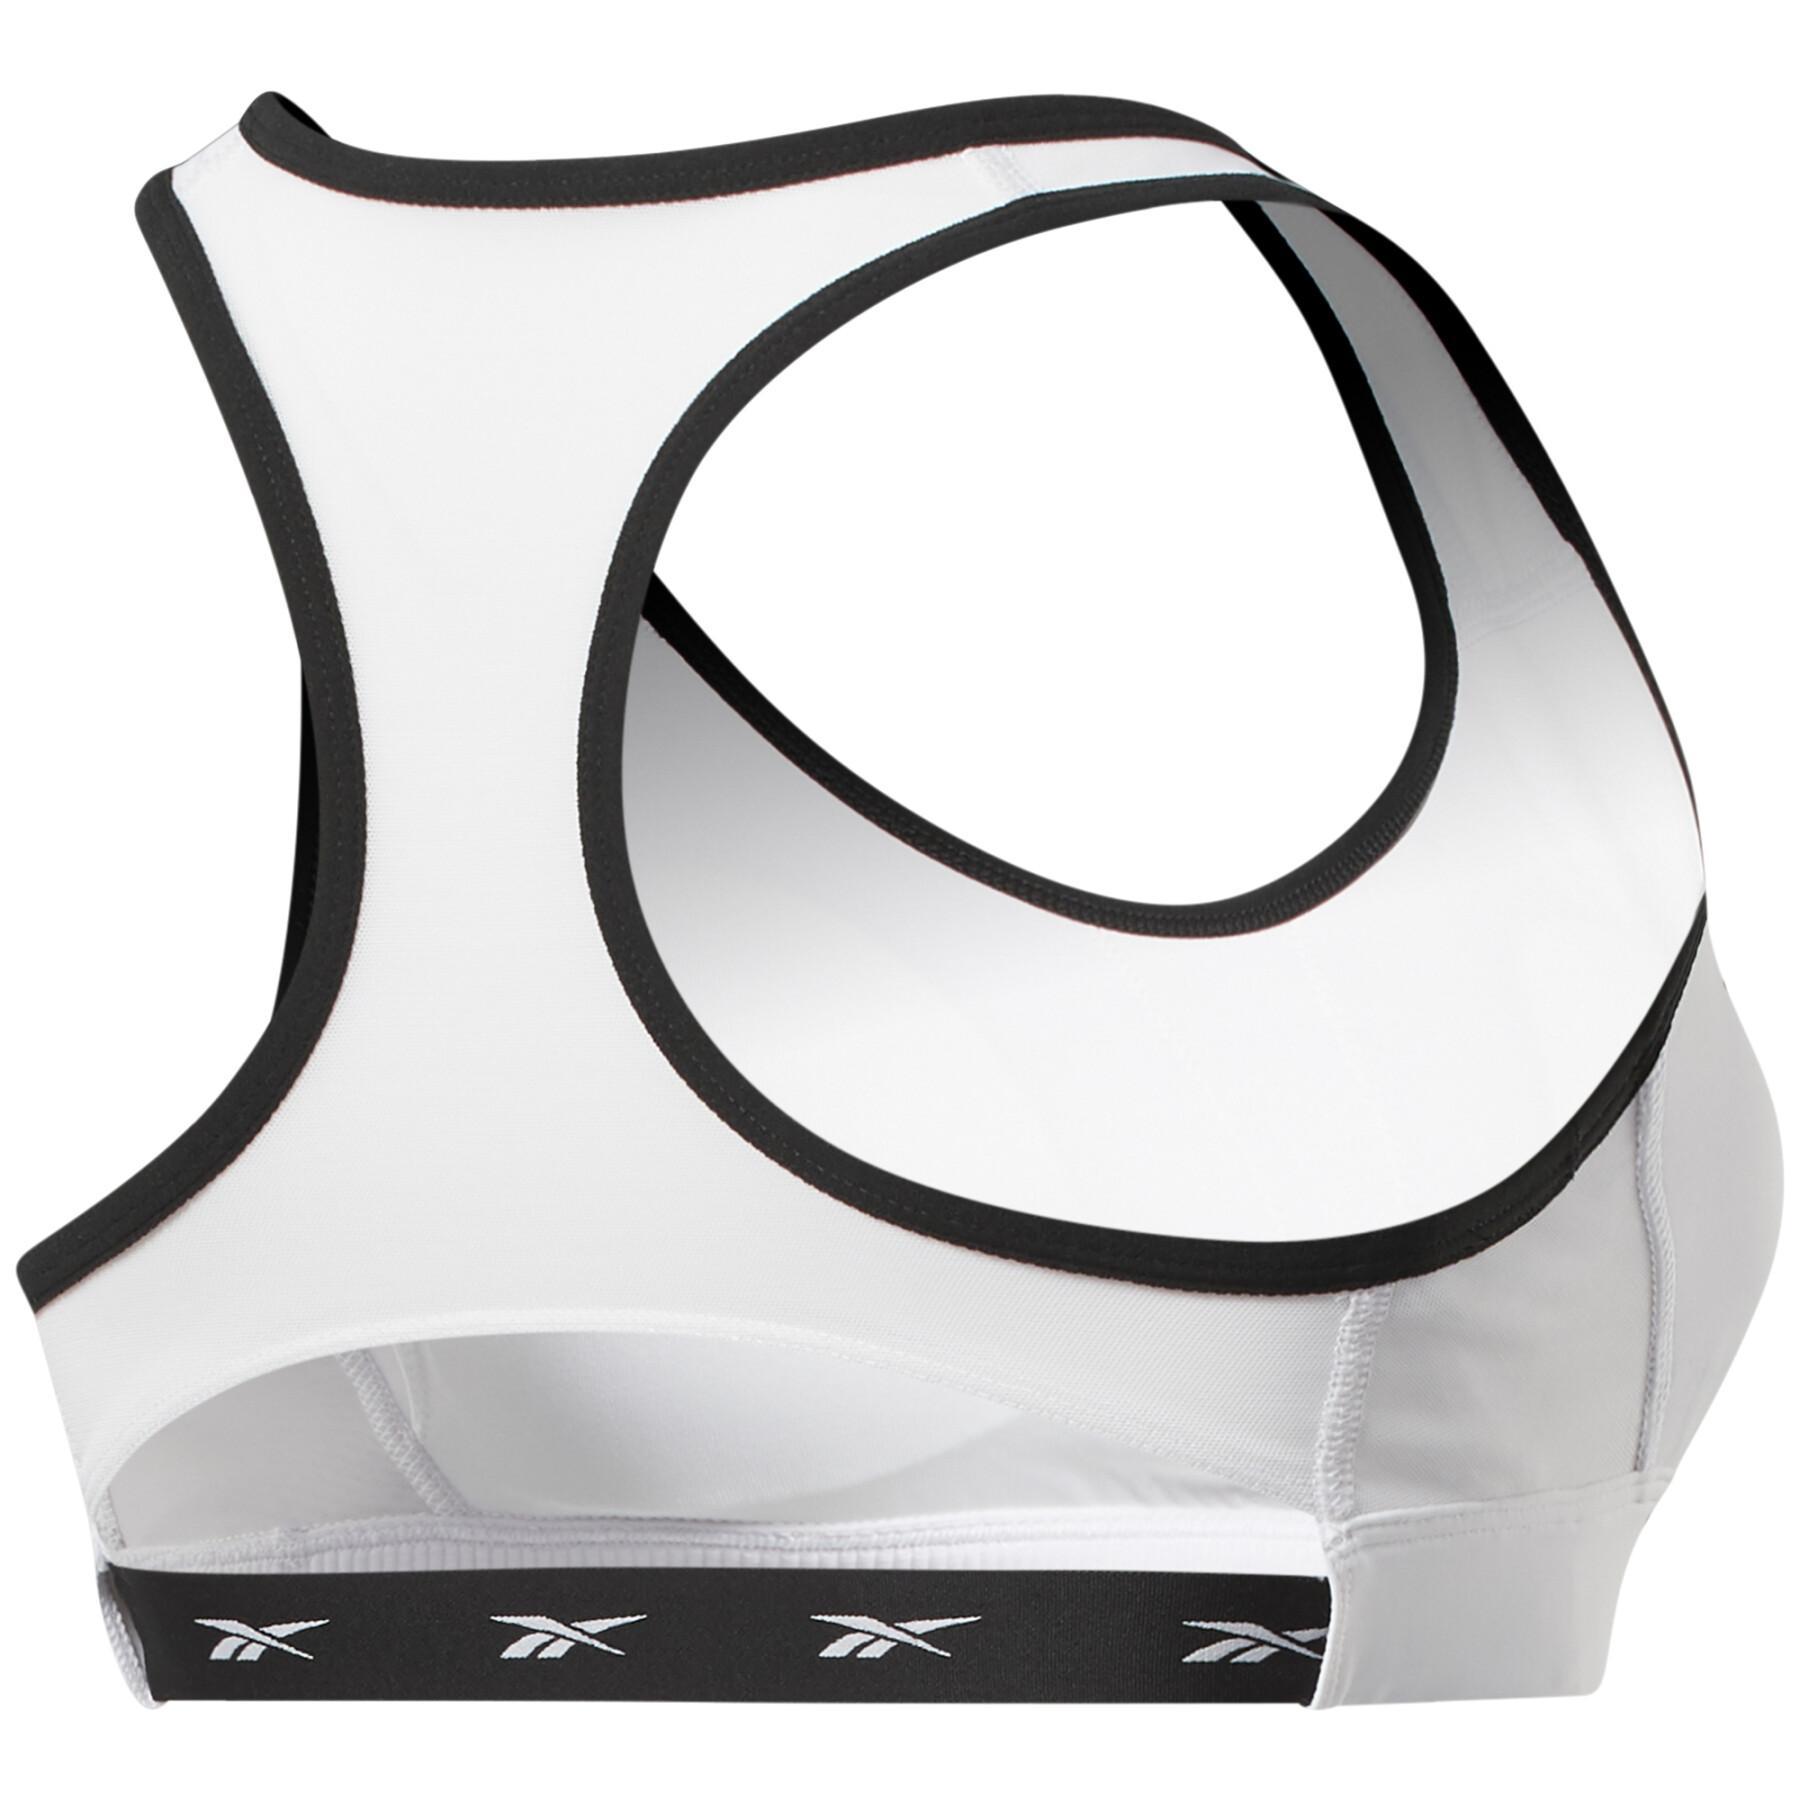 Women's swimmer's back bra Reebok Lux Vector